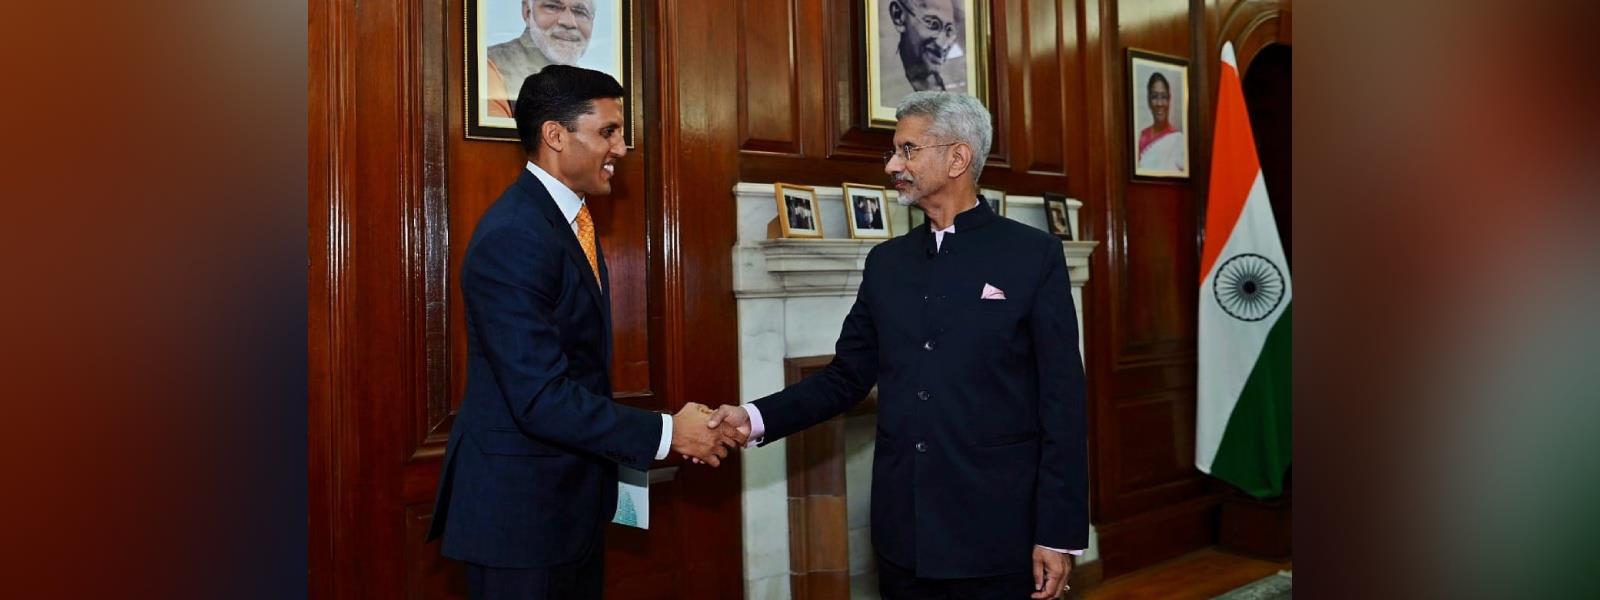 External Affairs Minister Dr. S. Jaishankar met Dr. Rajiv J. Shah, President of The Rockefeller Foundation in New Delhi